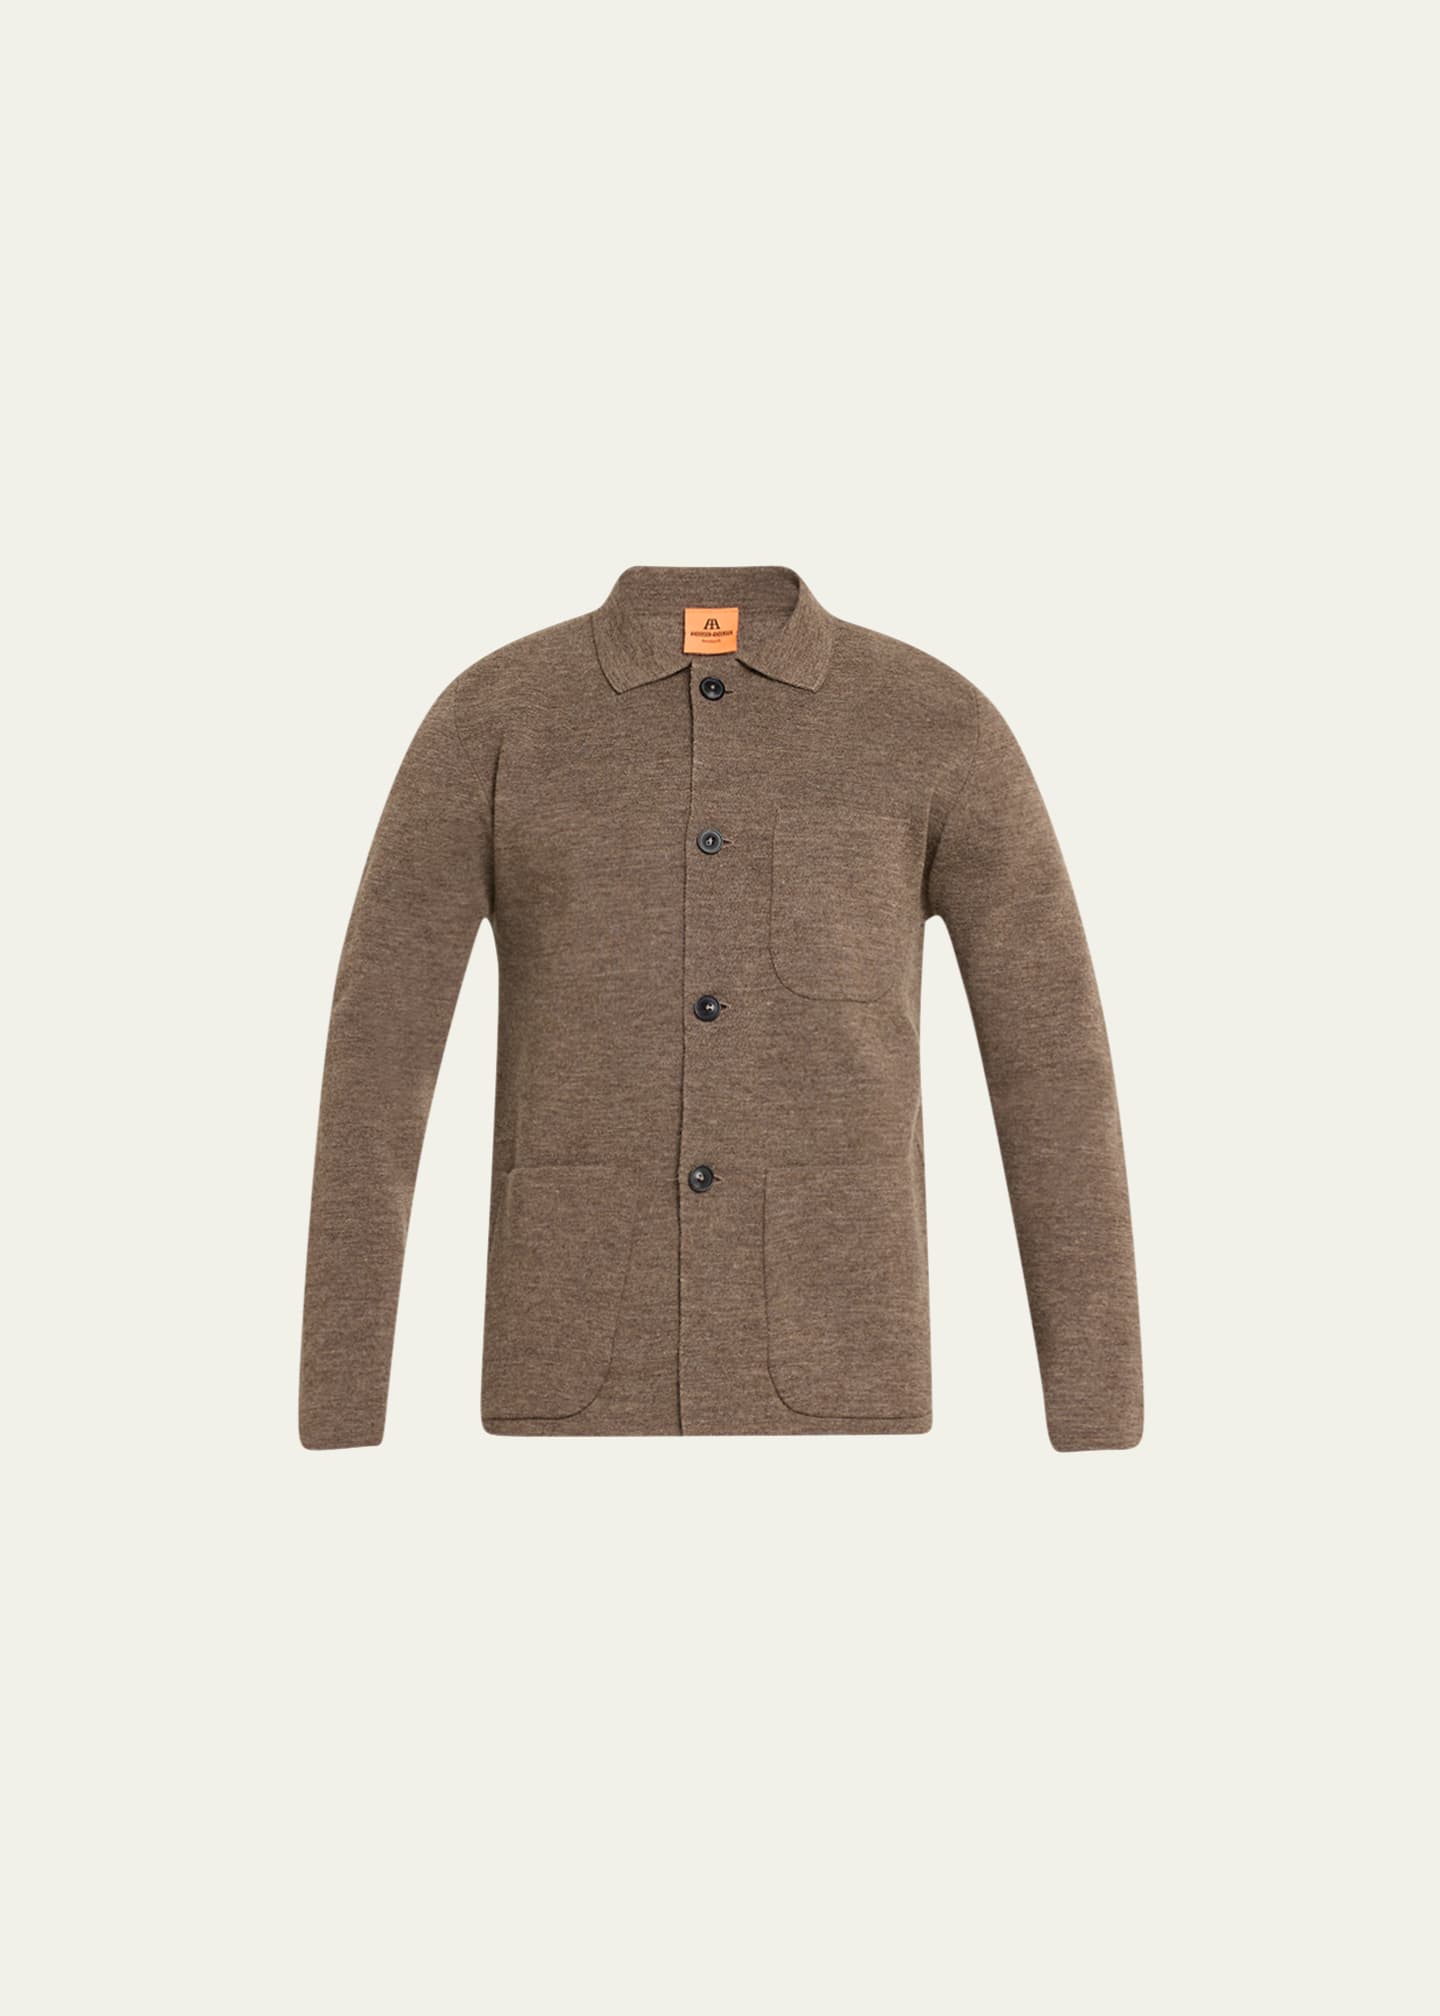 ANDERSEN-ANDERSEN Men's Wool Knit Work Jacket - Bergdorf Goodman